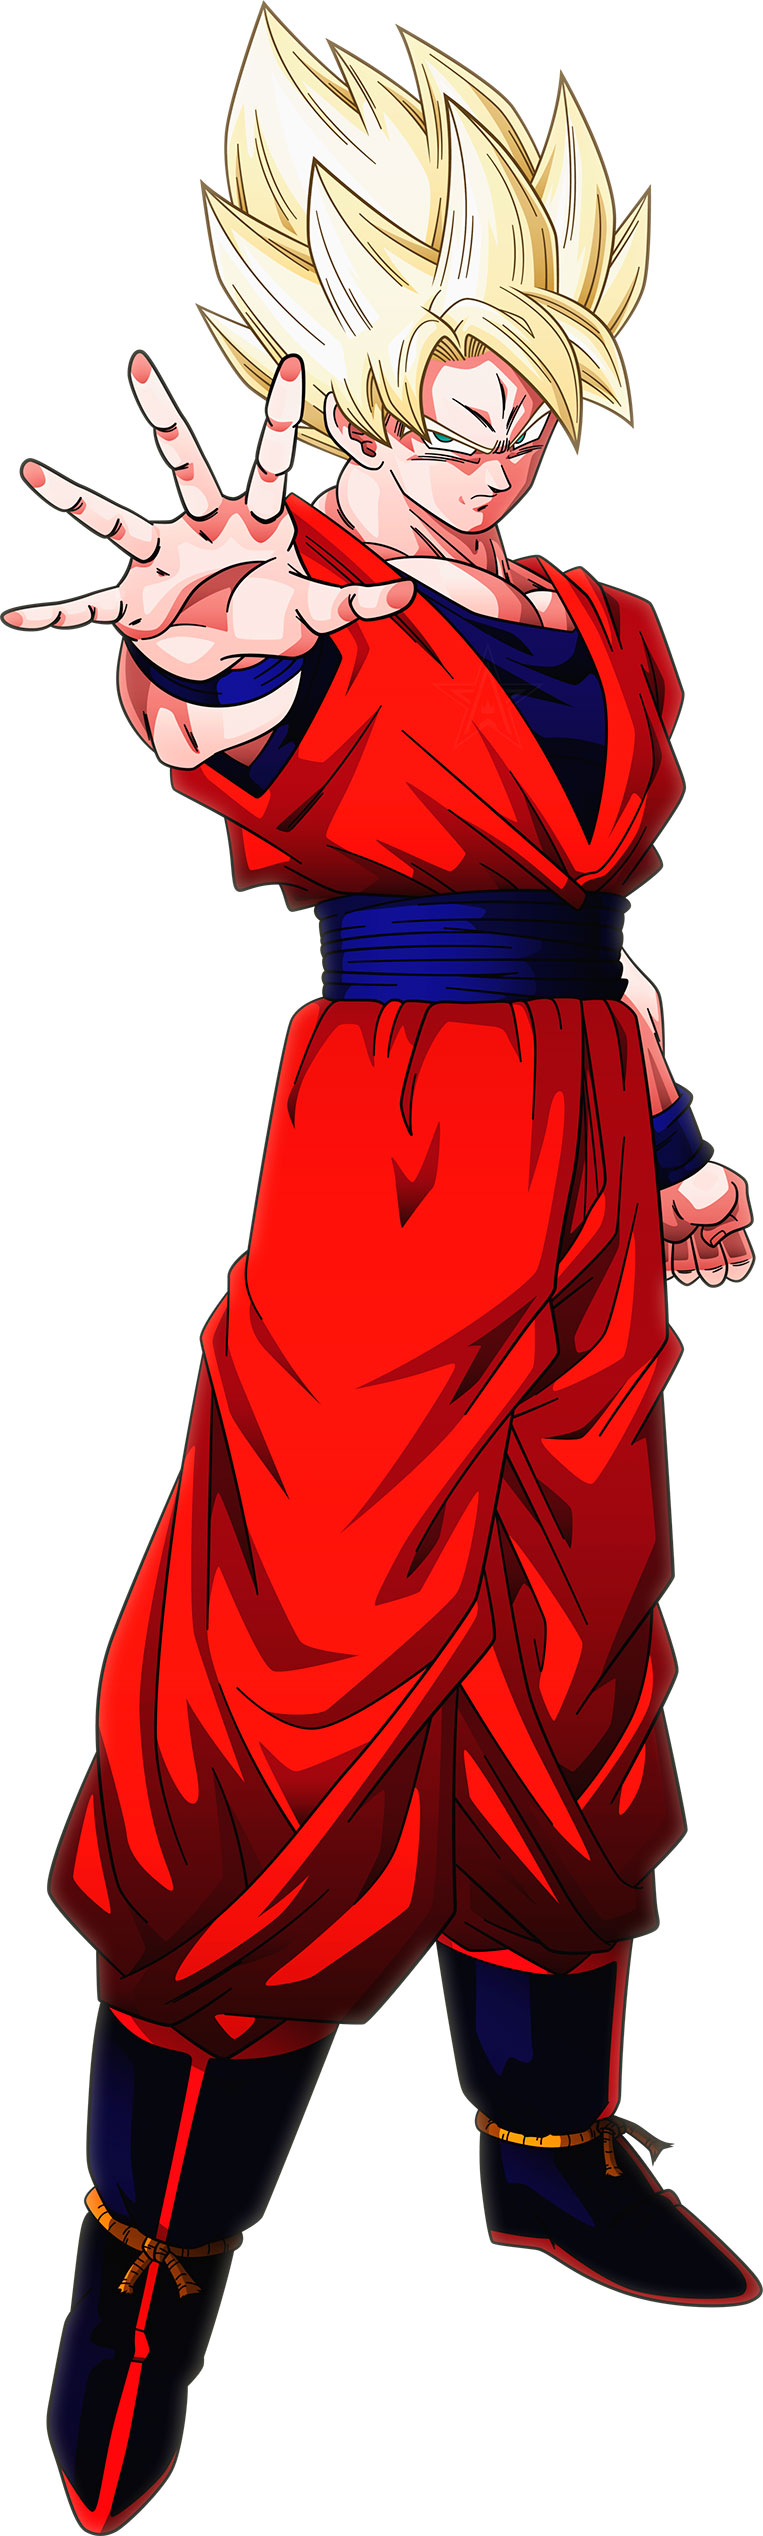 Goku super saiyajin